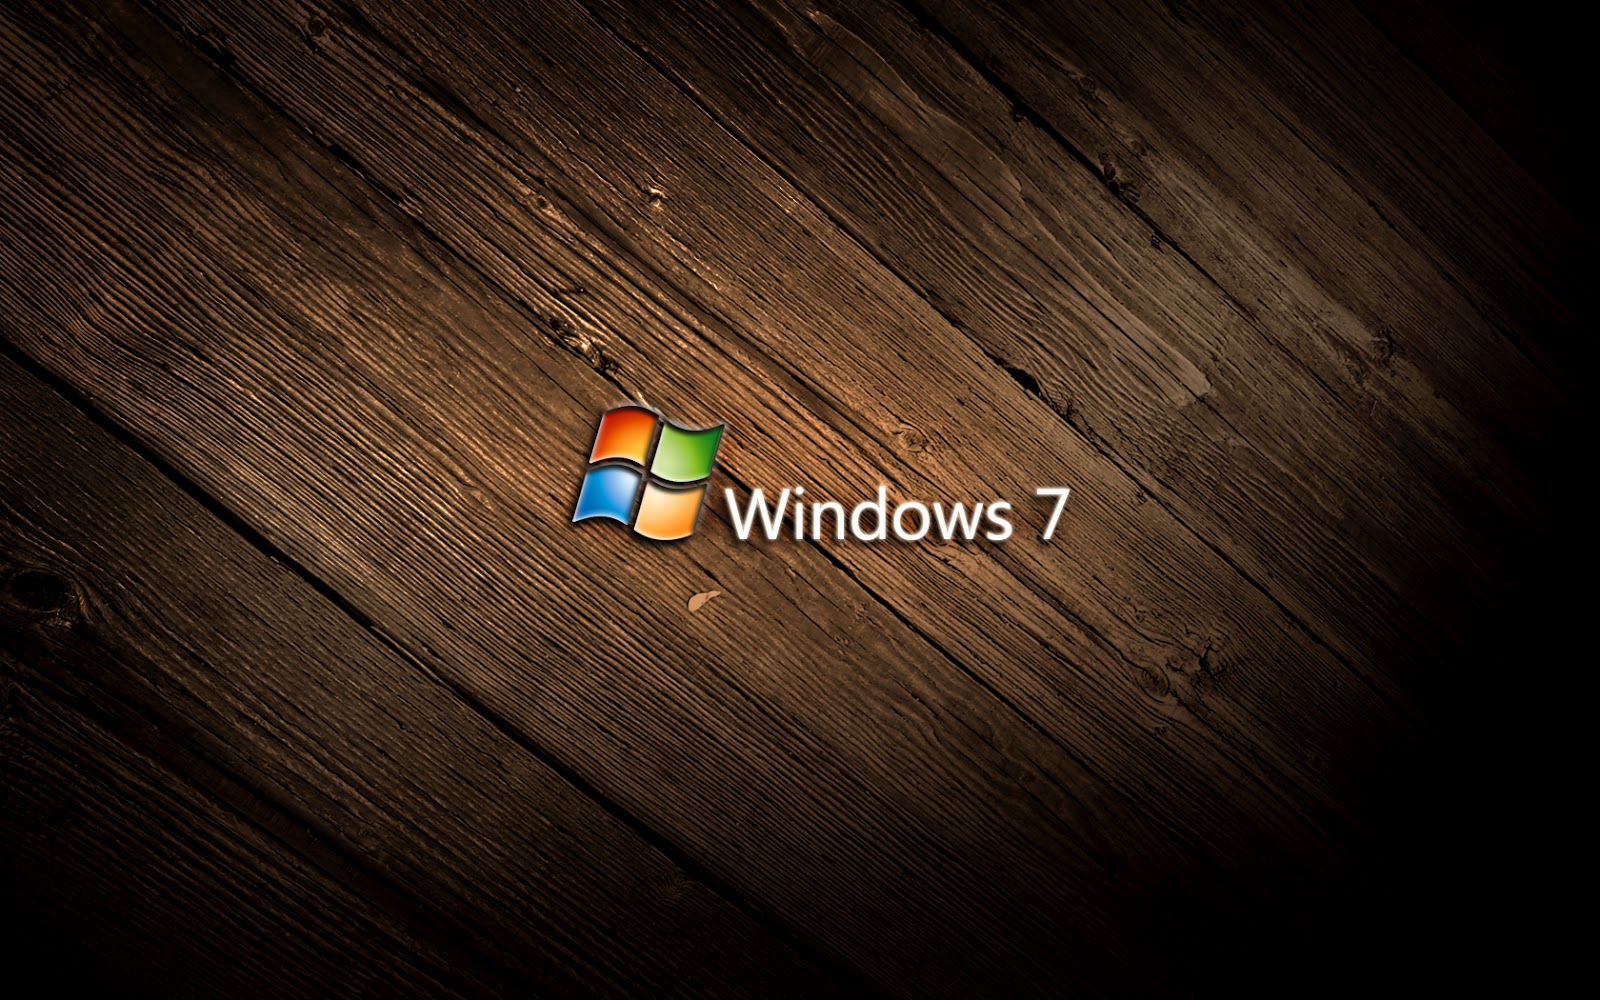 56+] Hd Wallpaper Windows 7 - WallpaperSafari